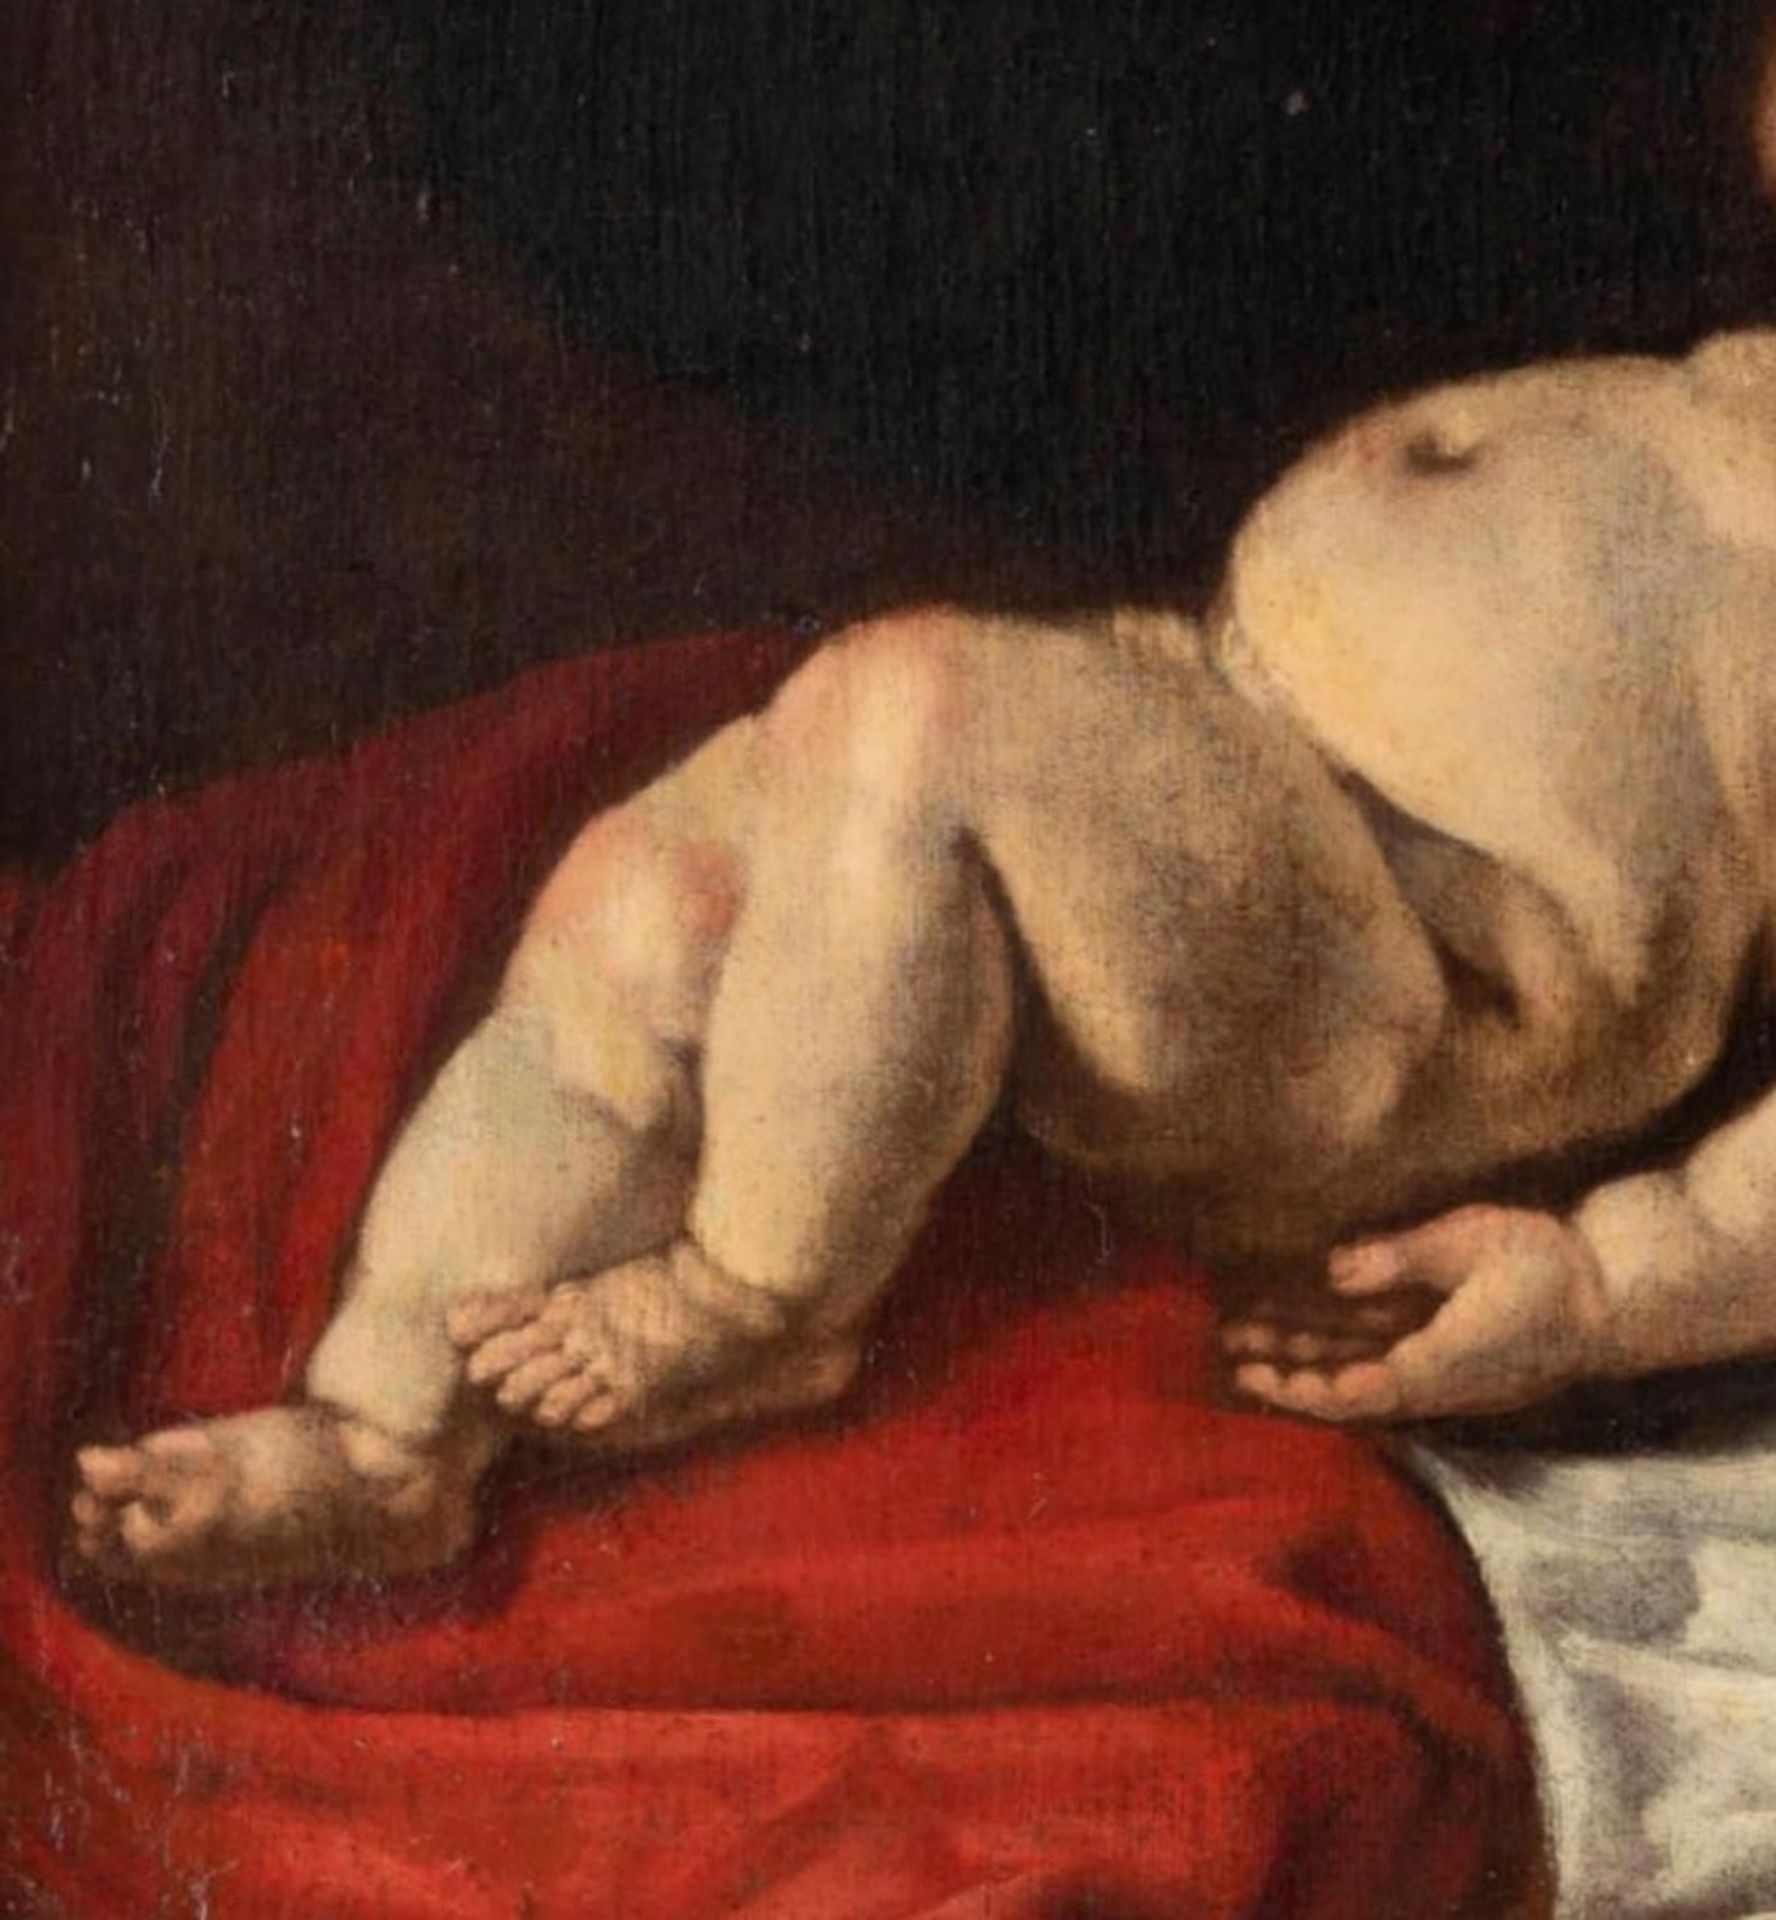 Luigi Miradori, Italy, around 1600 - around 1657 "Infant Jesus Asleep" 17th century - Image 3 of 3